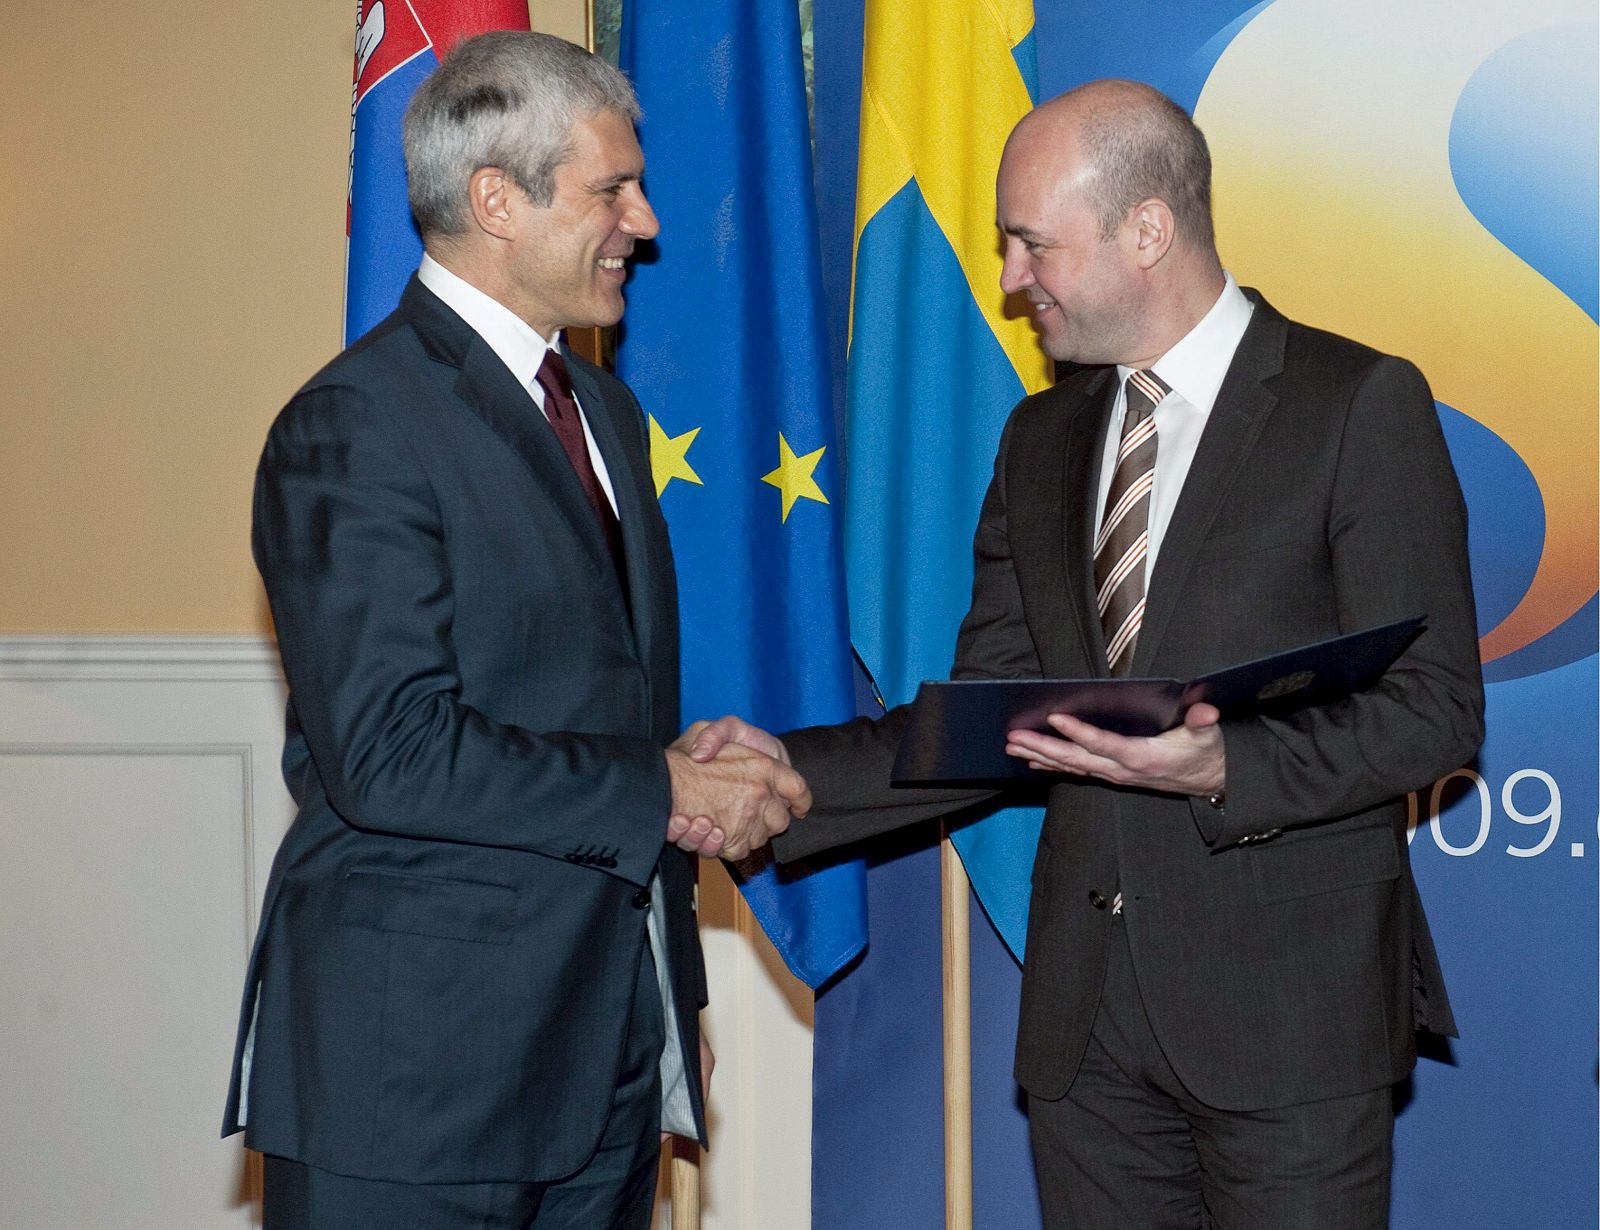 El presidente serbio Boris Tadic entrega al primer ministro de Suecia, Fredrik Reinfeldt, que ostenta la presidencia de turno de la Unión Europea, la solicitud oficial de su país para integrarse a la UE.